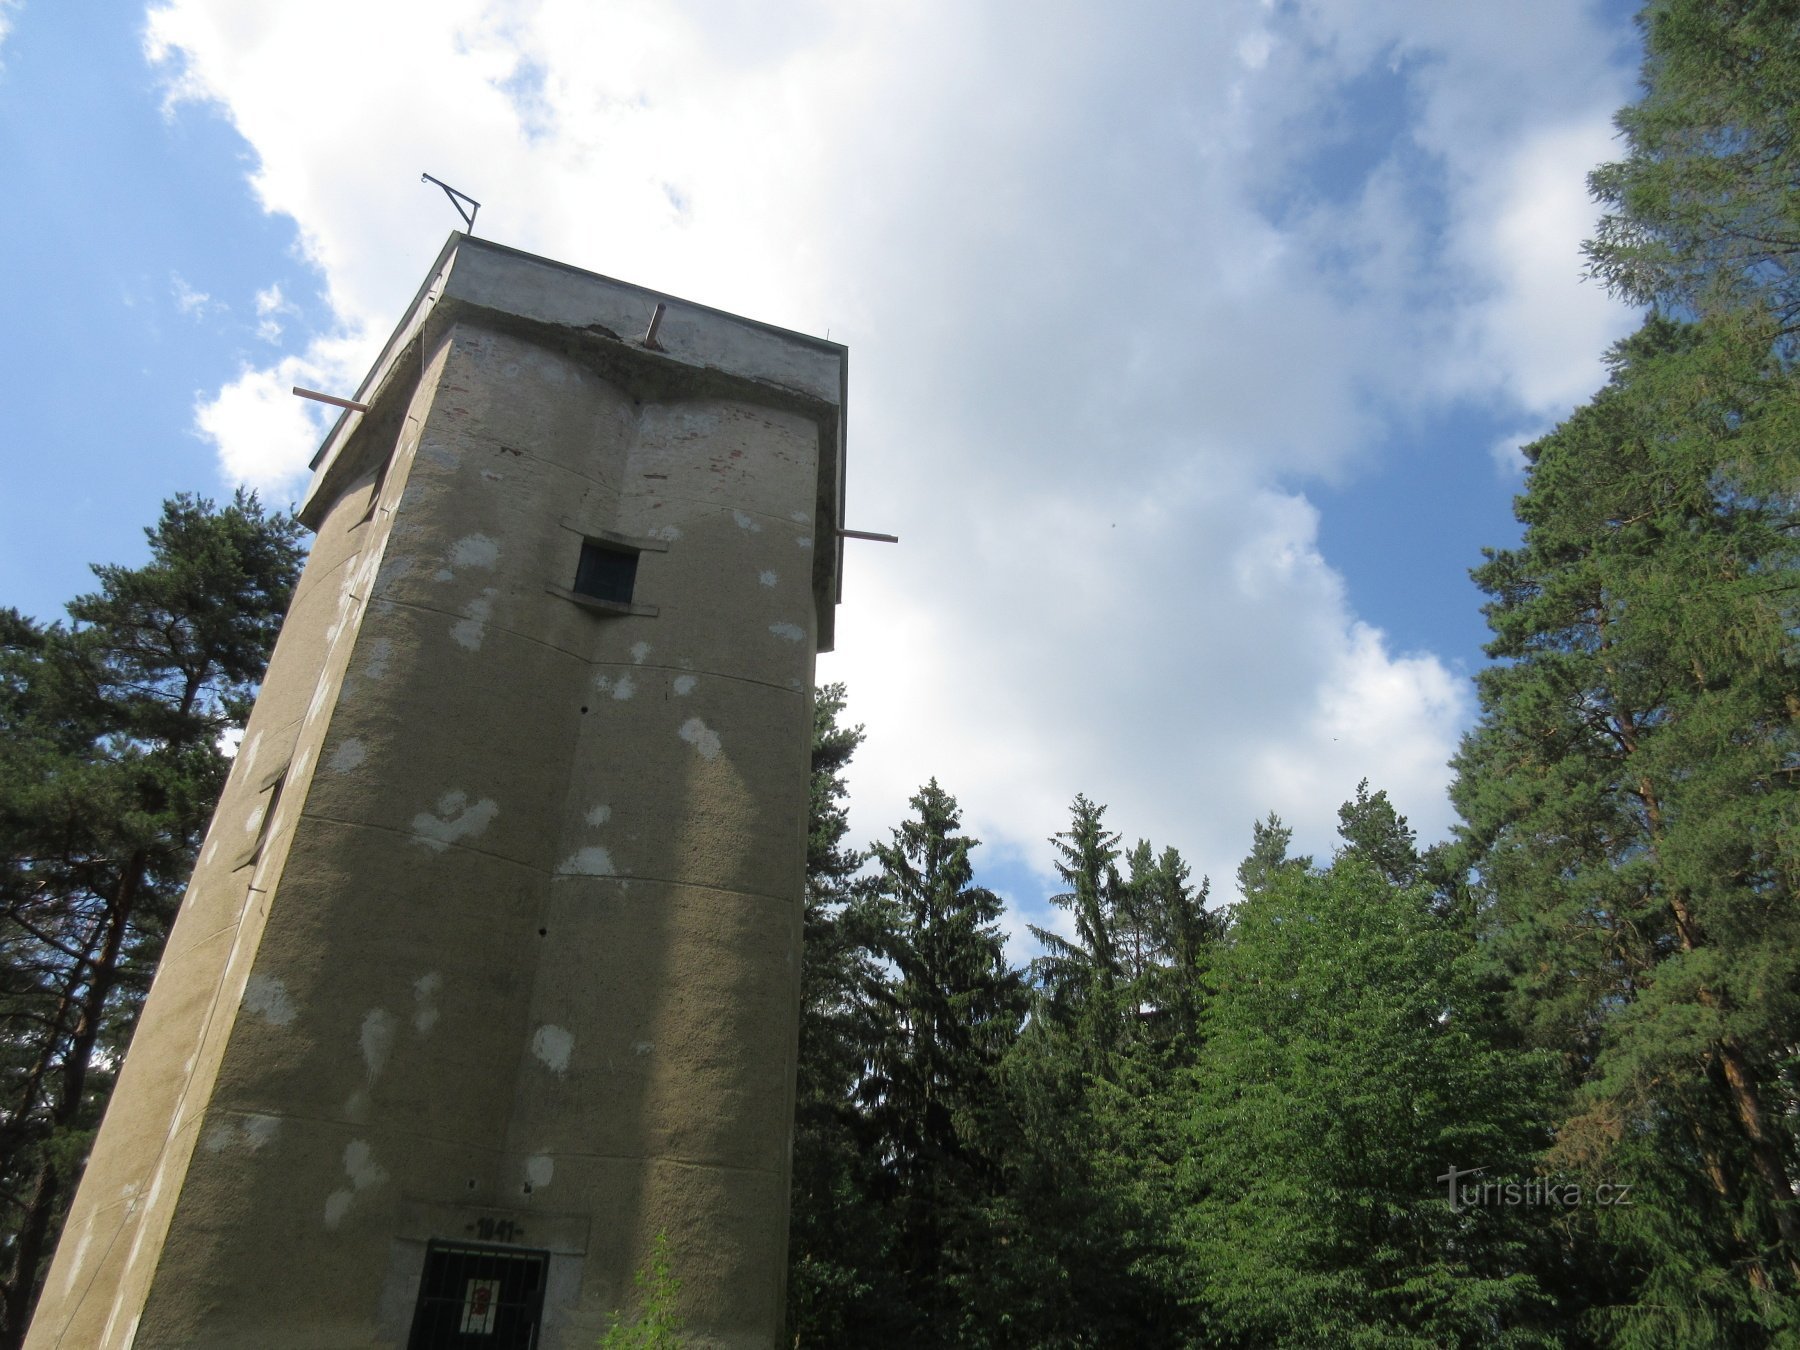 Surveyor's Tower - Koňský vrch observationstårn